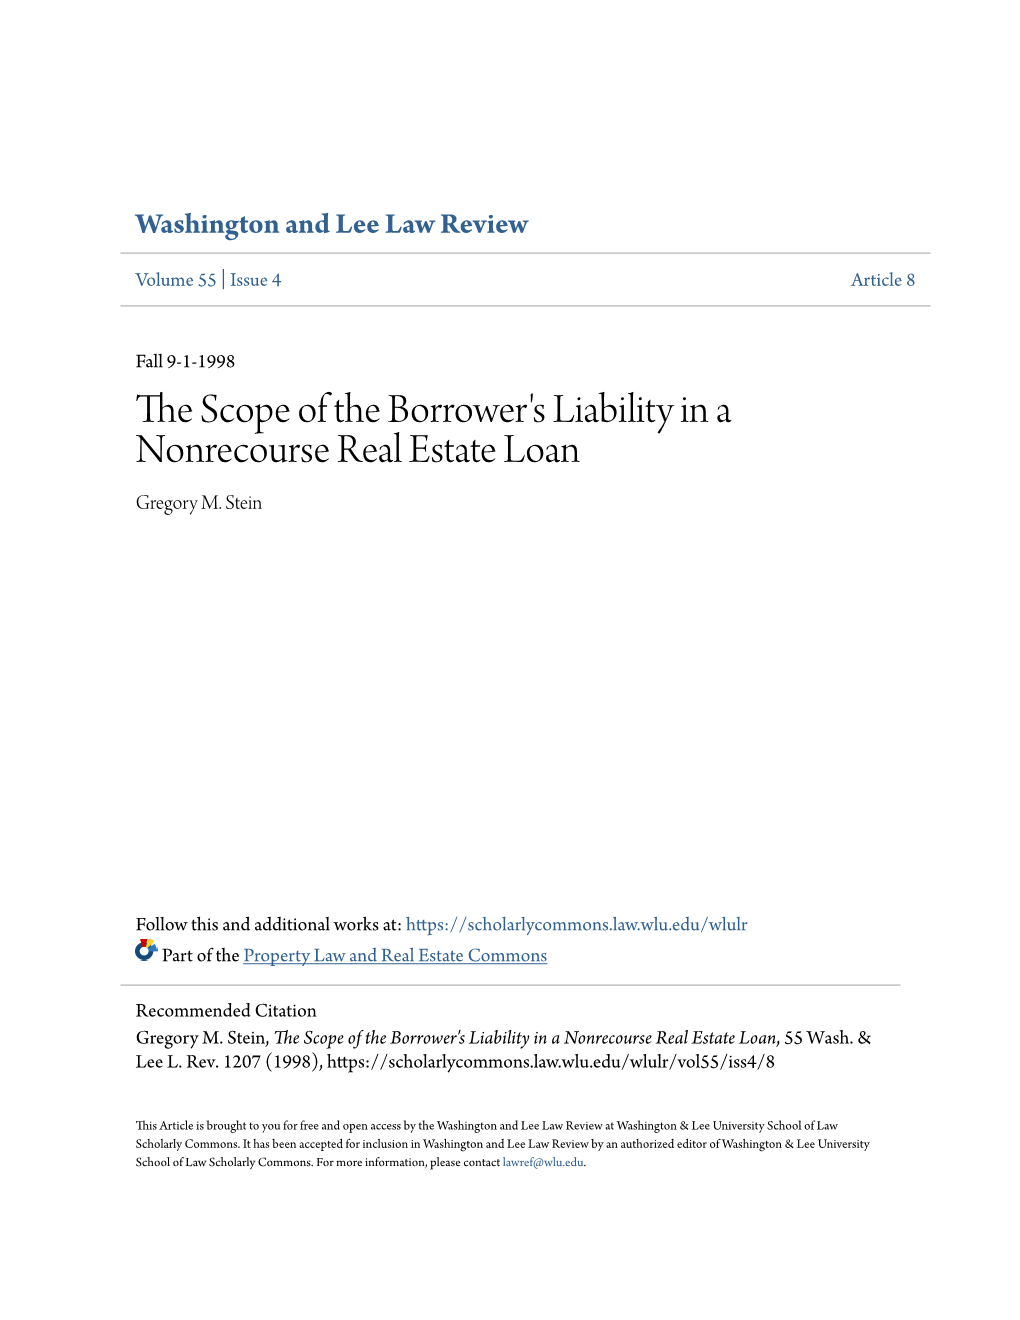 The Scope of the Borrower's Liability in a Nonrecourse Real Estate Loan, 55 Wash